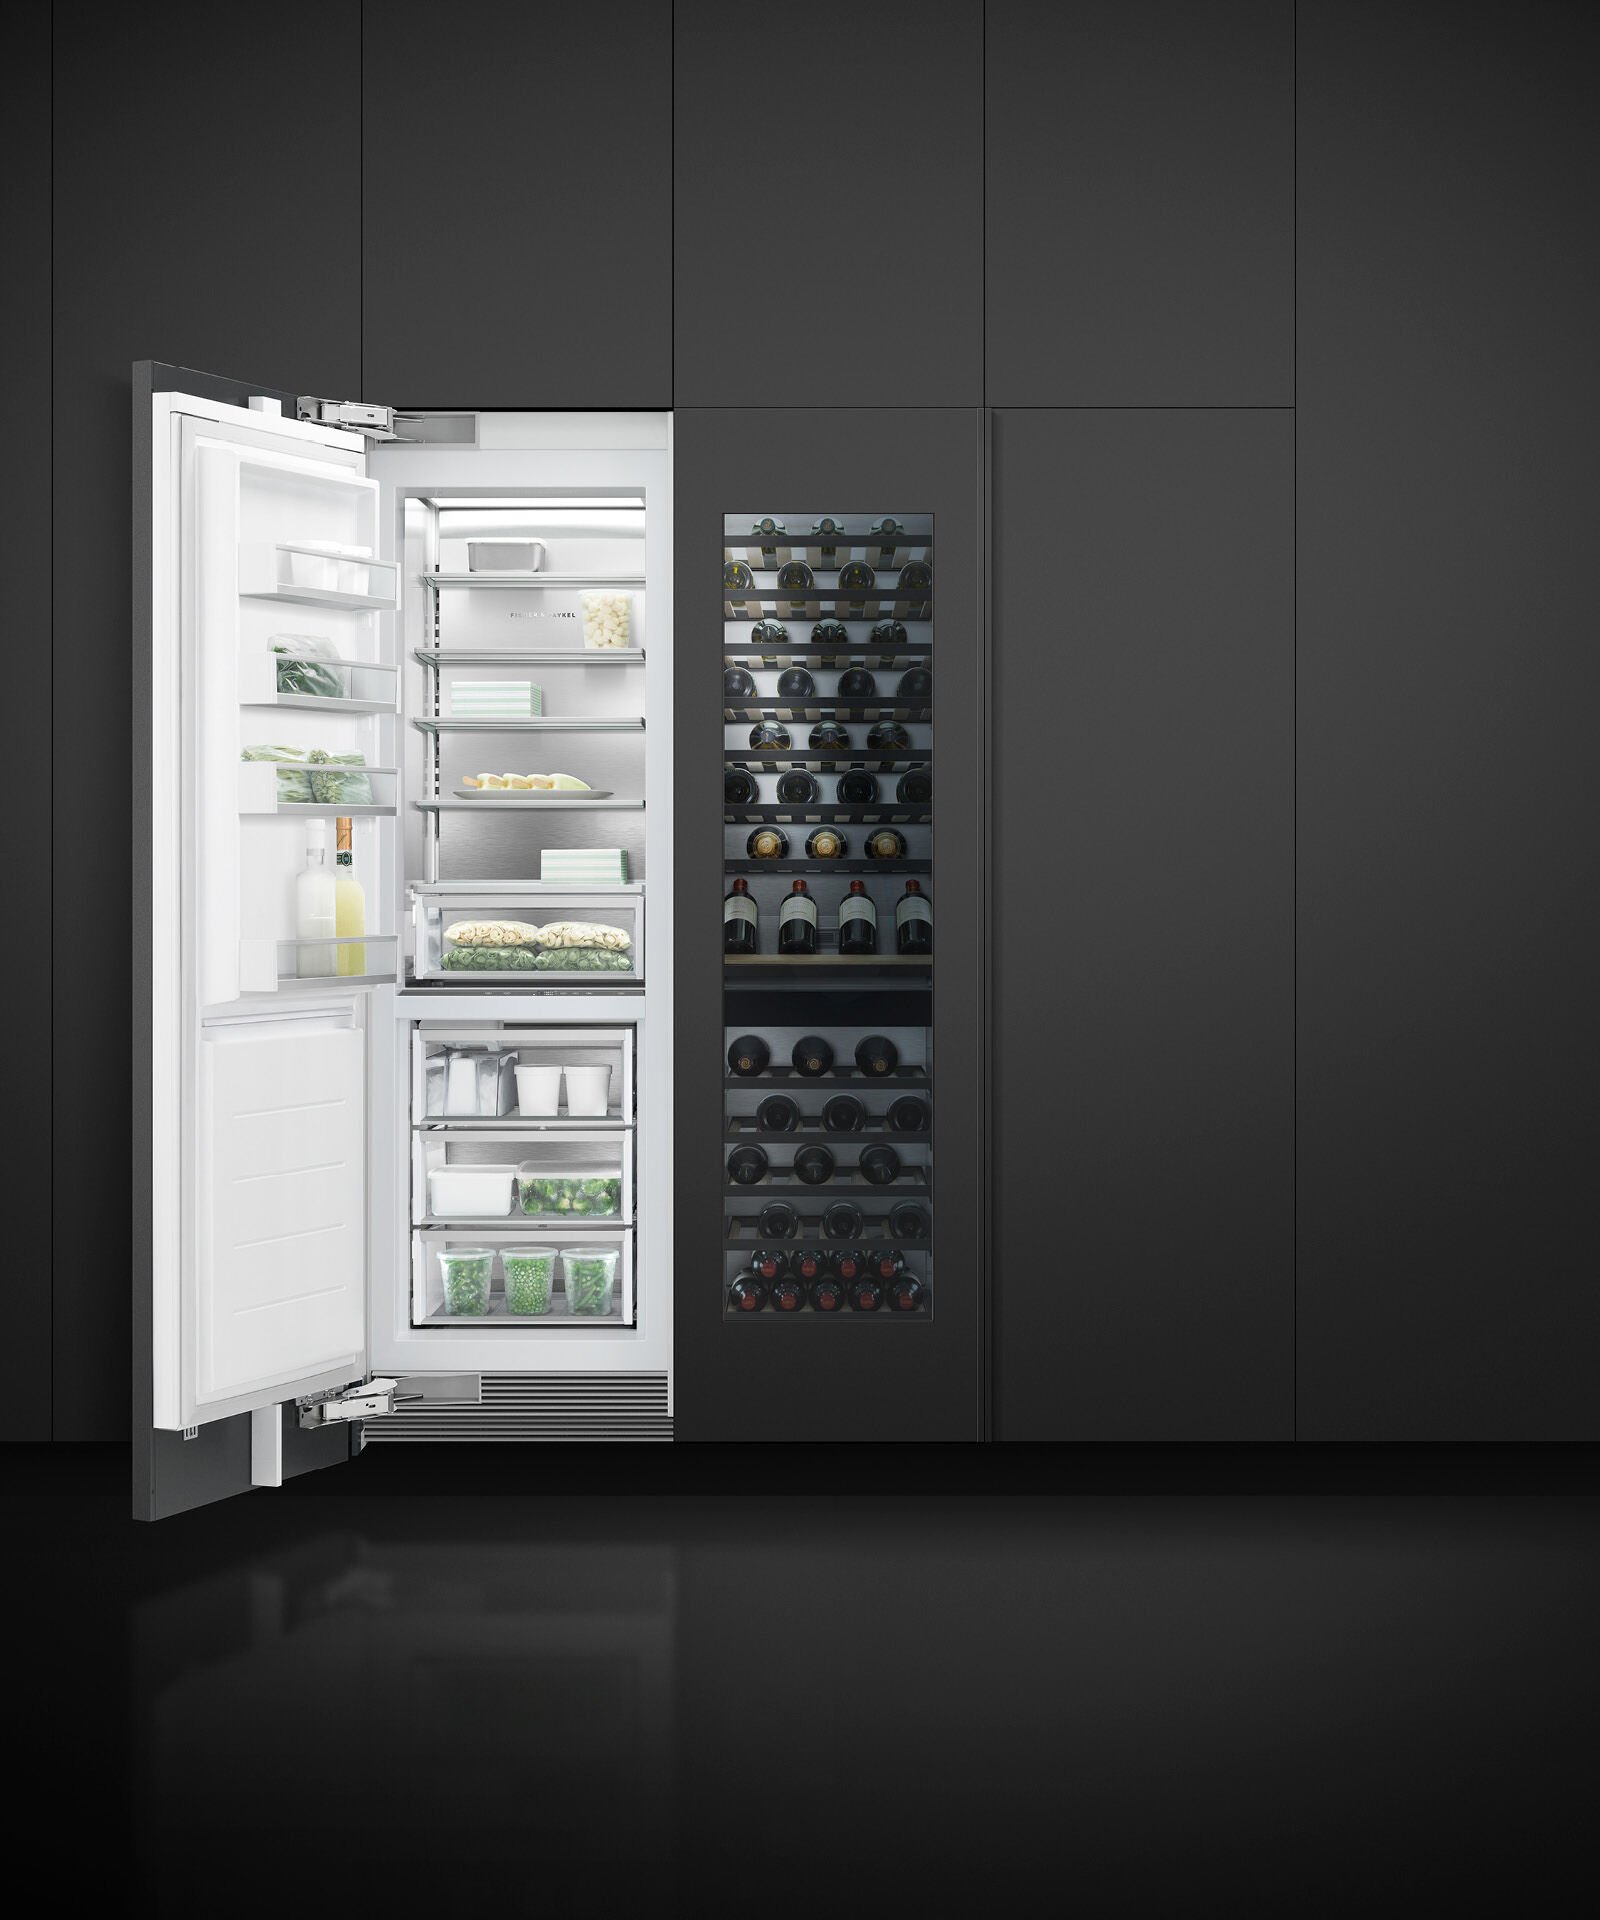 嵌入式立式冷凍櫃, 61cm, 自動製冰 gallery image 11.0